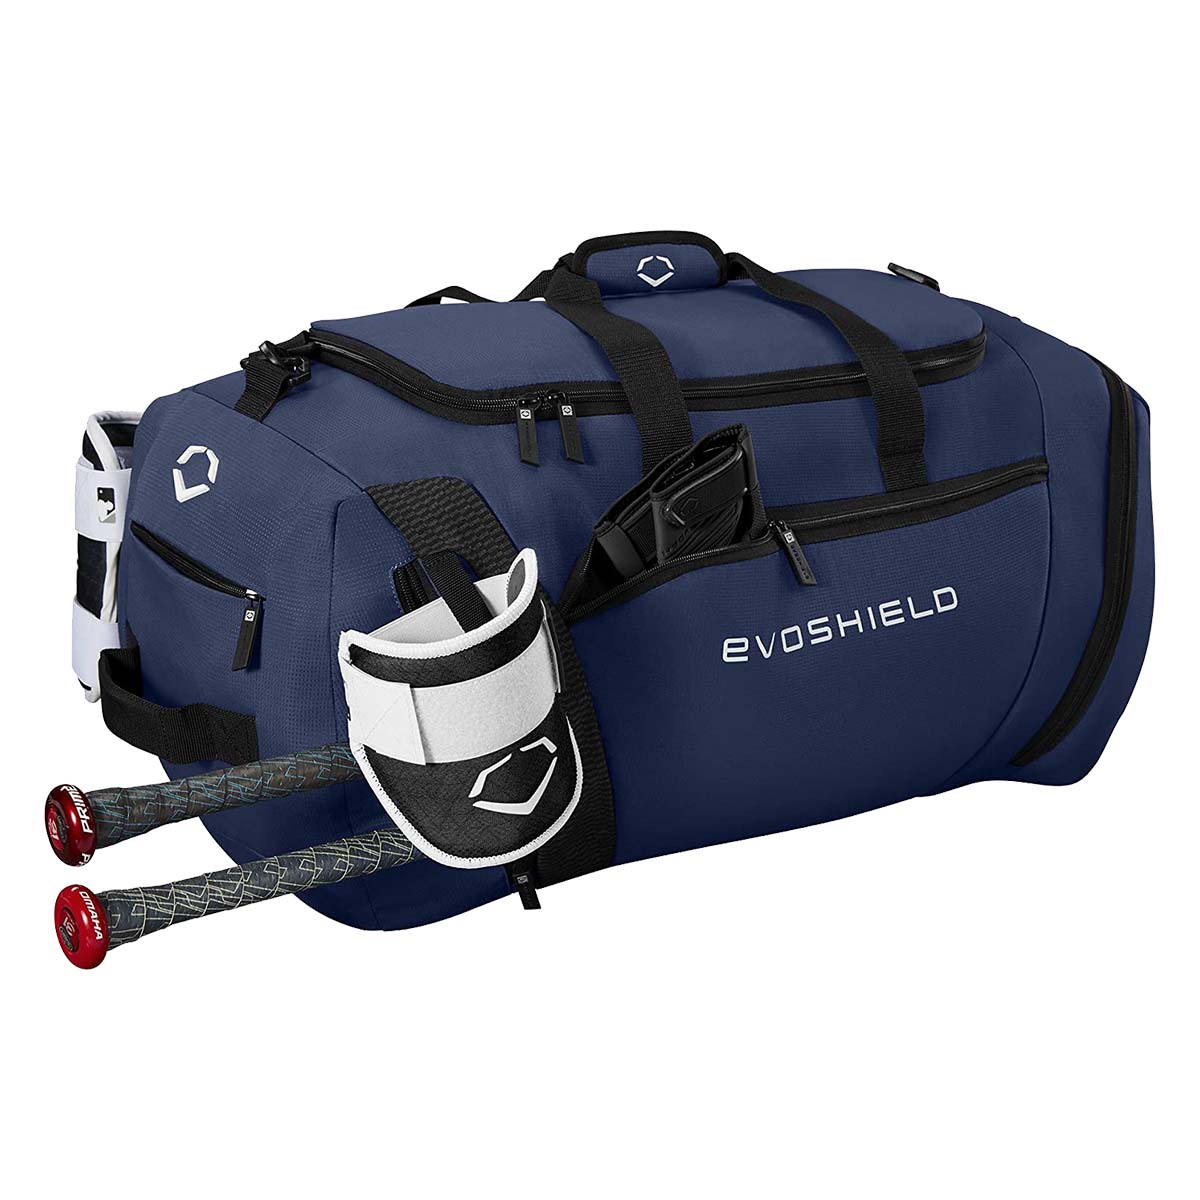 Evoshield Training Duffle Bag | BaseballSavings.com